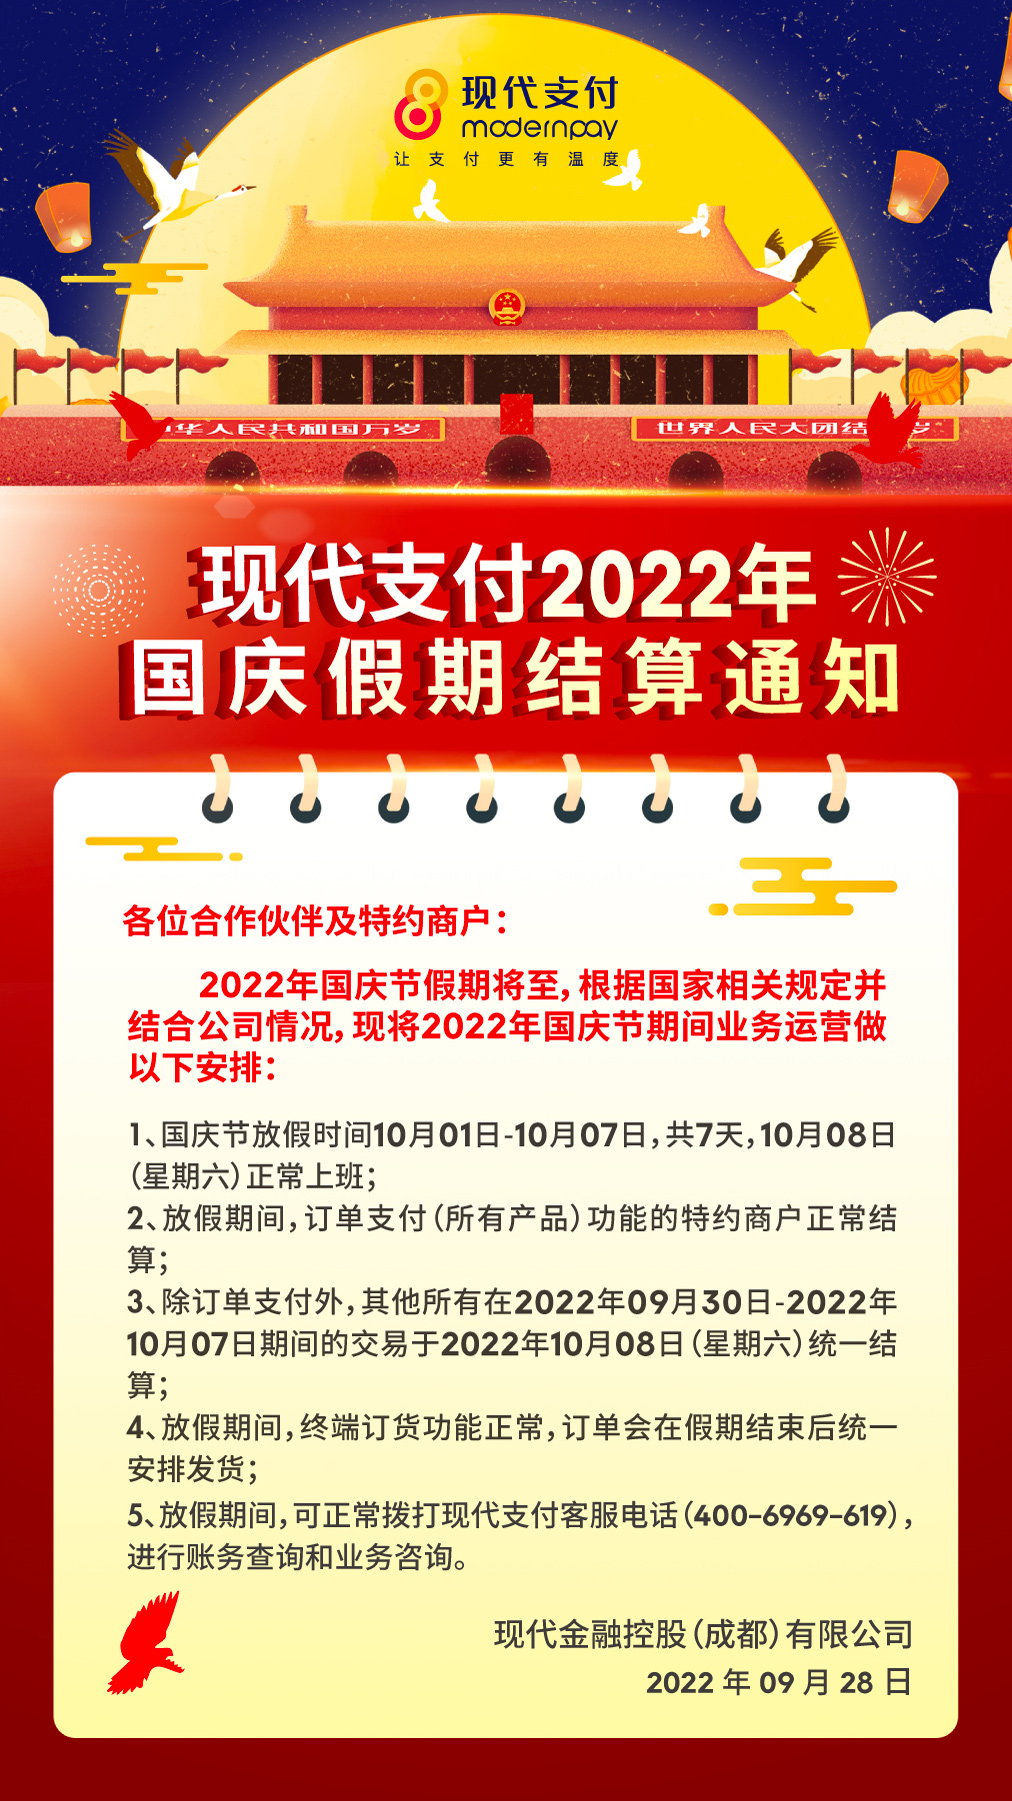 现代支付金飞天POS机2022年国庆假期